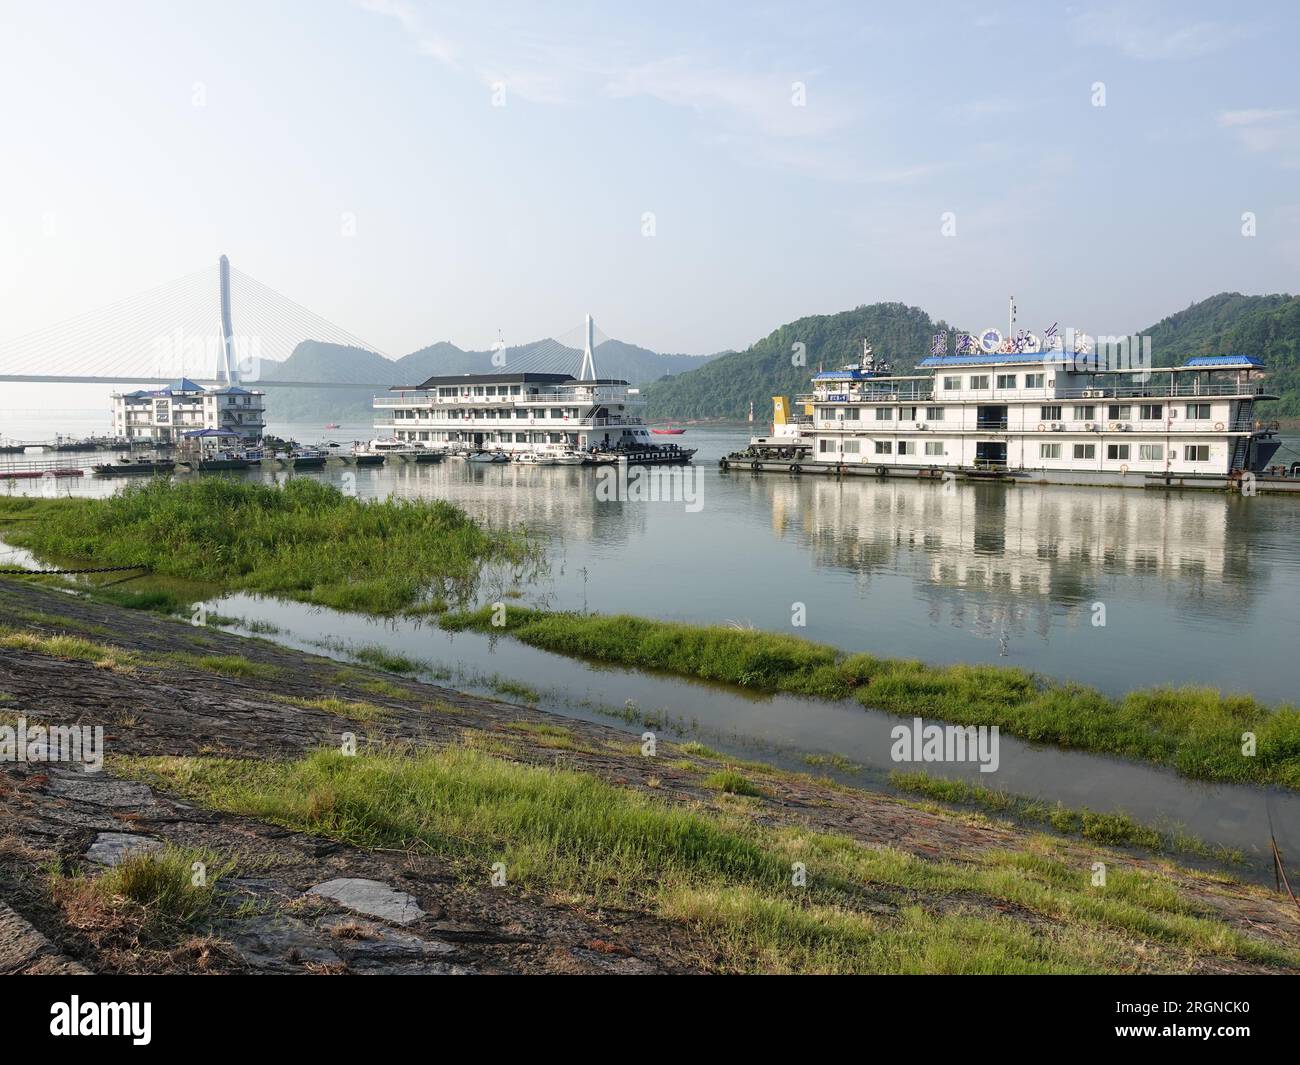 YICHANG, CHINE - 11 AOÛT 2023 - les plantes vertes trempent dans l'eau claire de la montée du fleuve Yangtze à Yichang, province du Hubei, Chine, le 11 août 2023 Banque D'Images